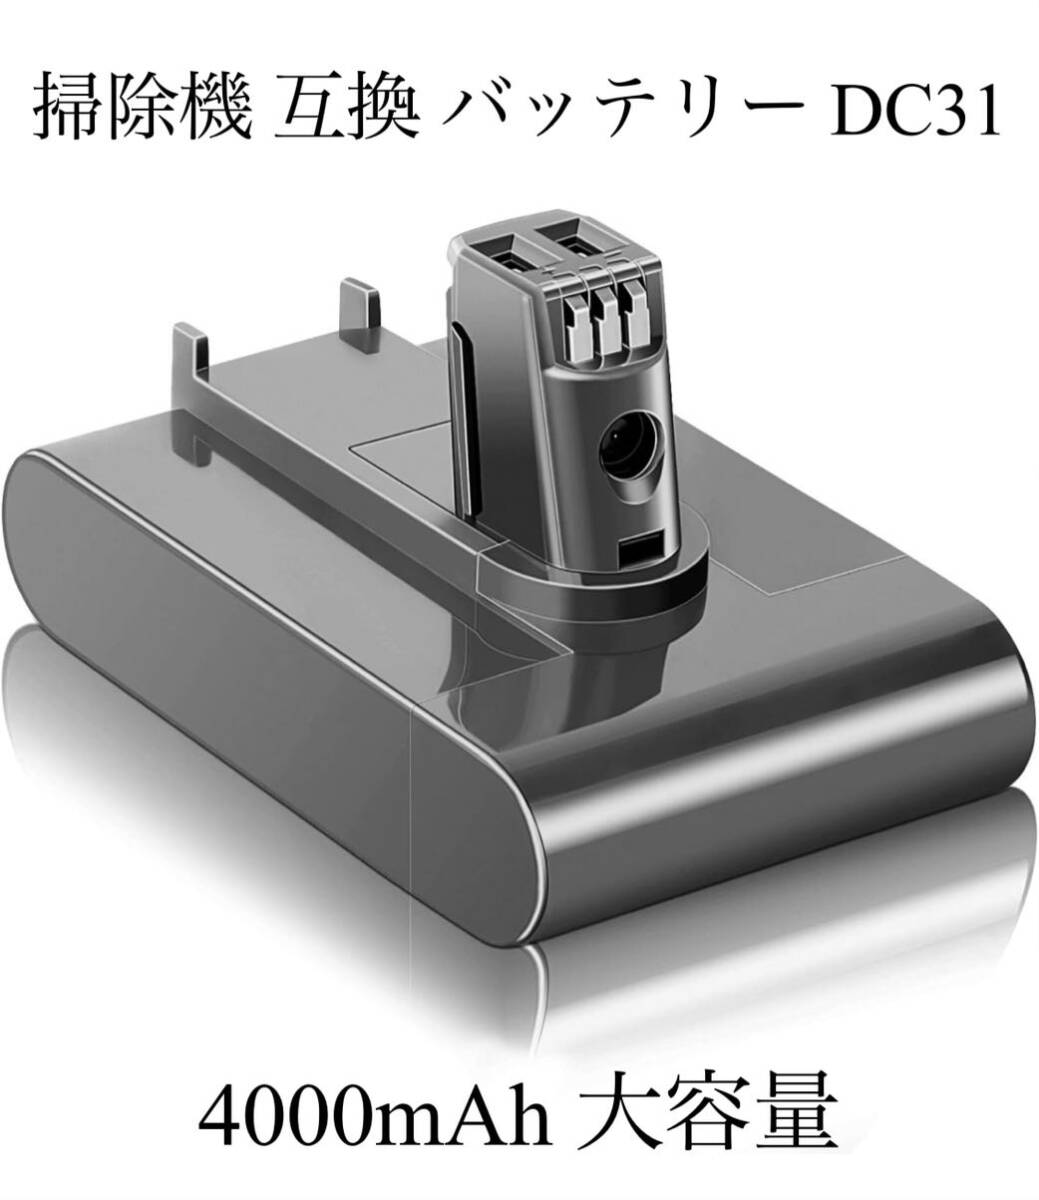 掃除機 互換 バッテリー DC31 （Type A 前期モデル ボタン脱着式 ）DC35 DC34 DC44 DC45 対応 4.0A大容量 互換バッテリー 送料無料_画像1